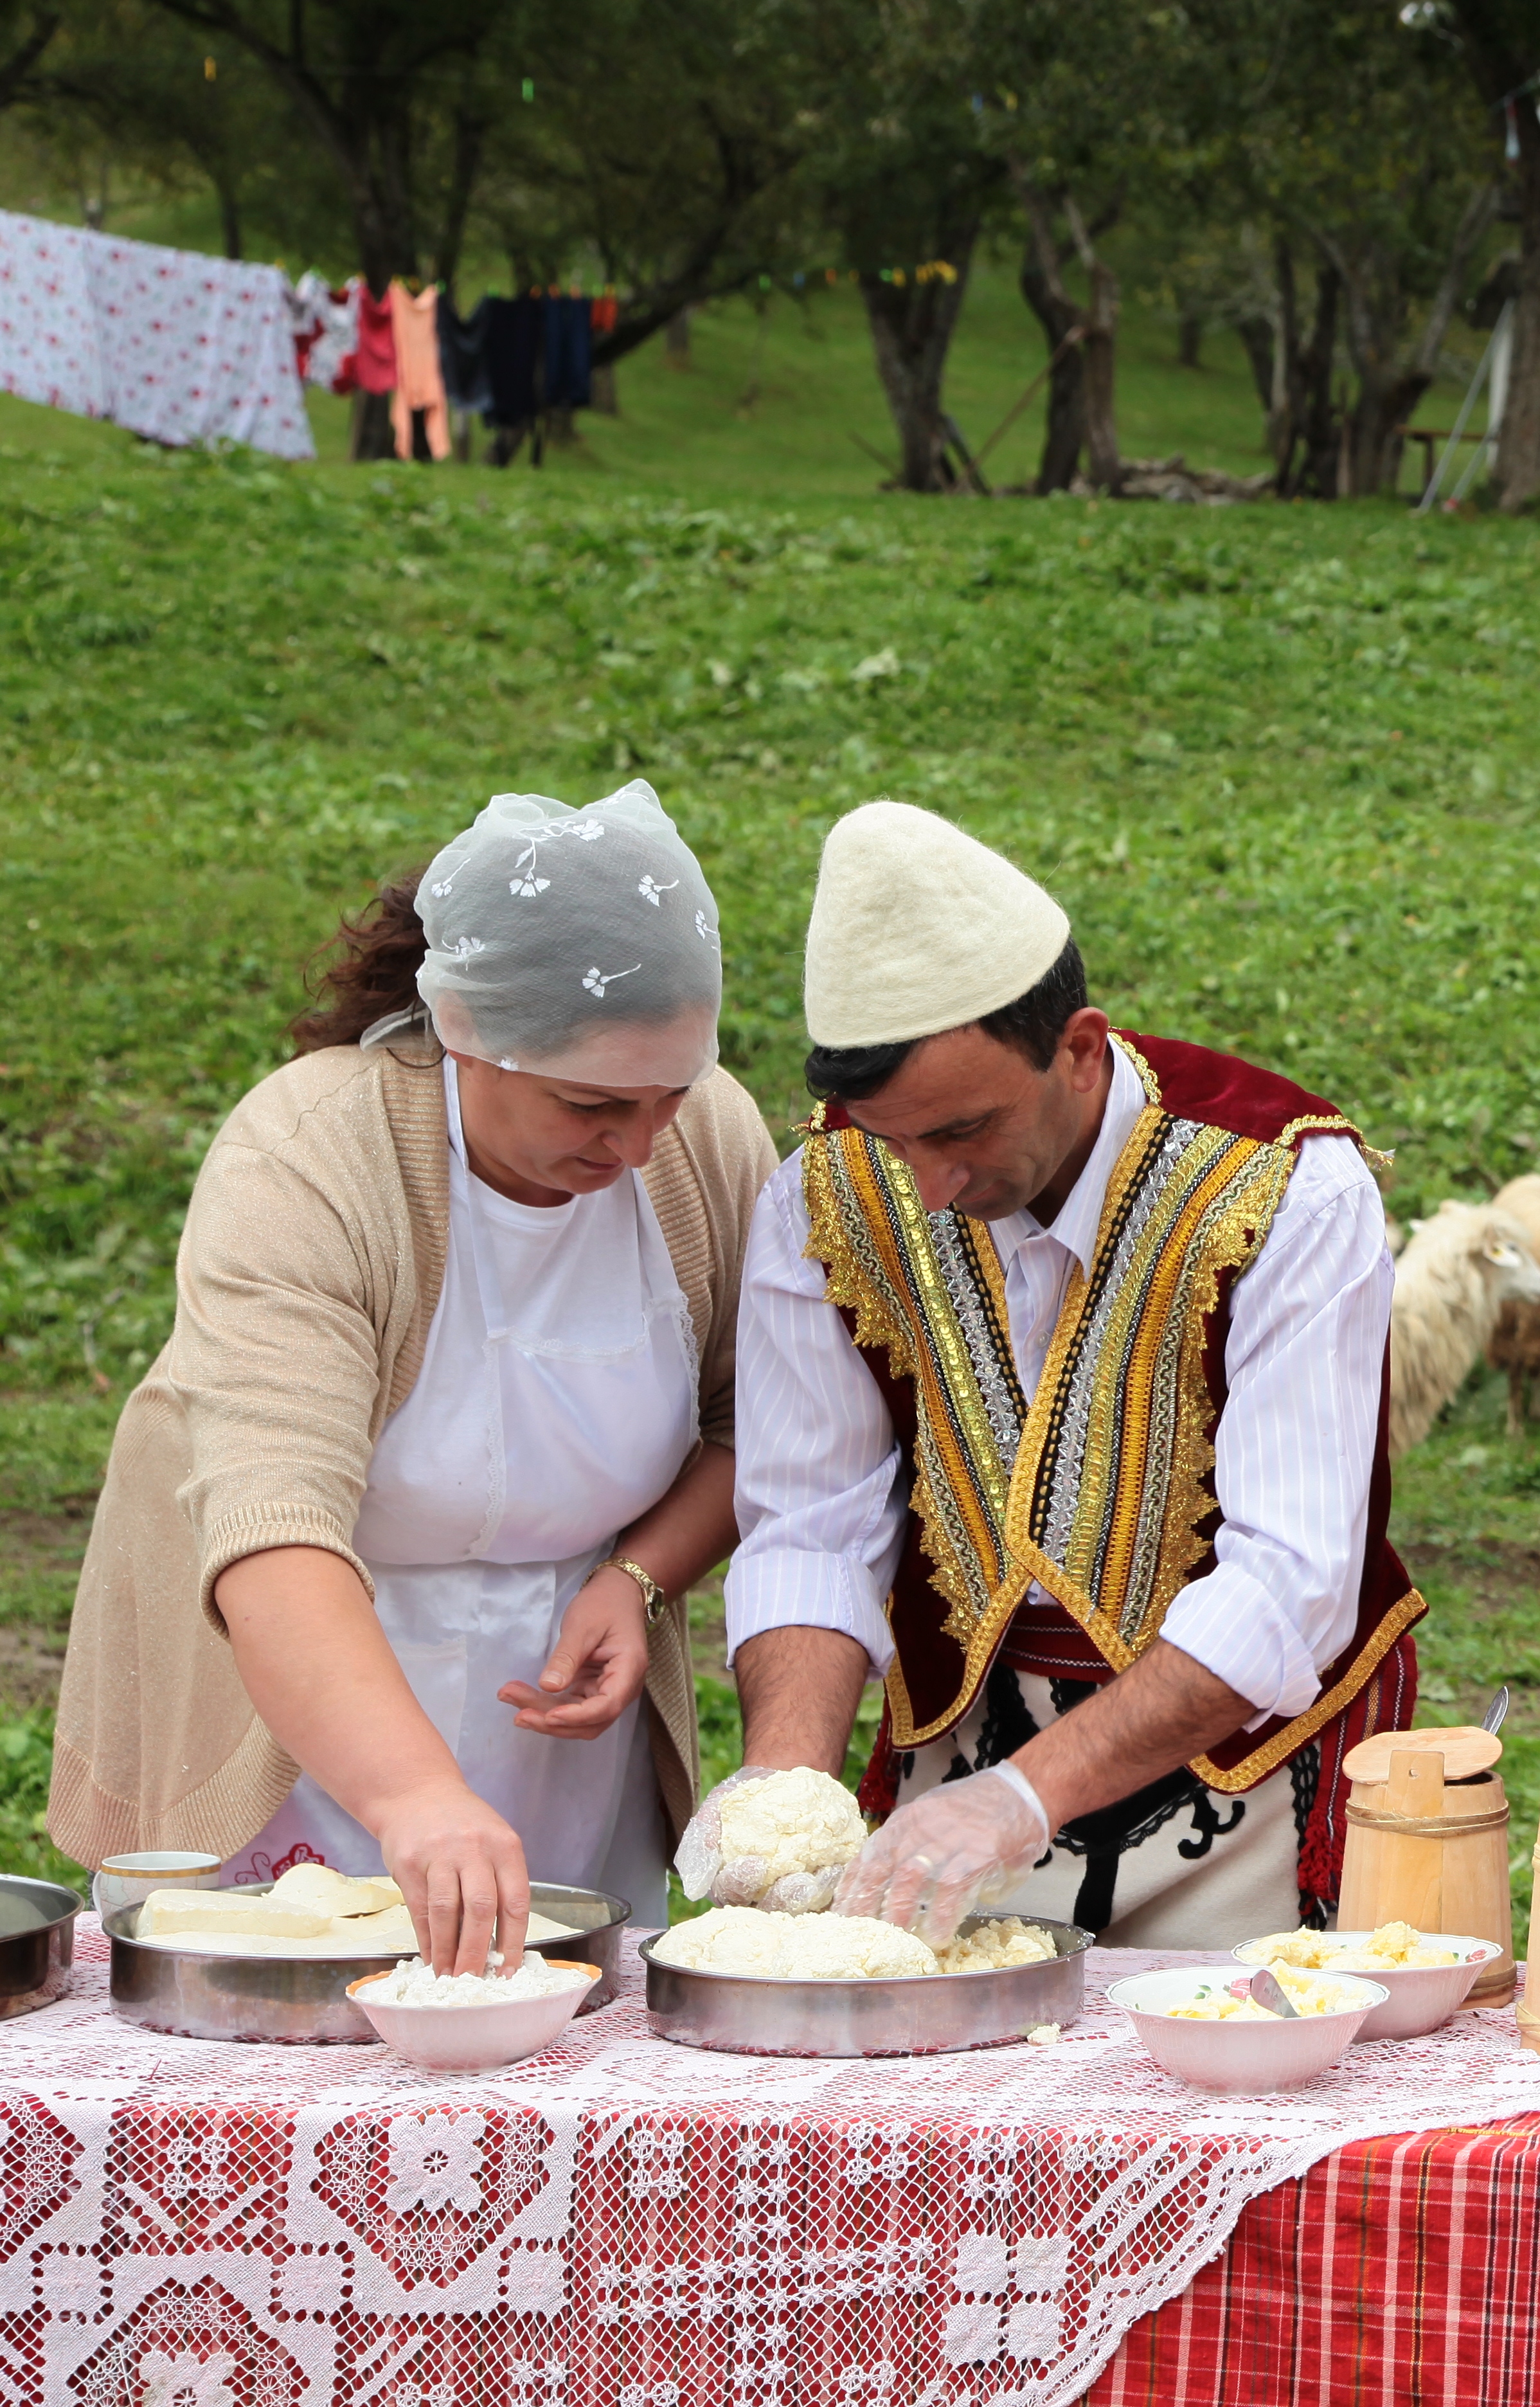 Preparazione dell’antichissimo formaggio tradizionale “Mishavine”, tipico dei villaggi di Lepushe e Vermosh, del Nord Kelmend, Alpi Albanesi nominato Presidio Slowfood.